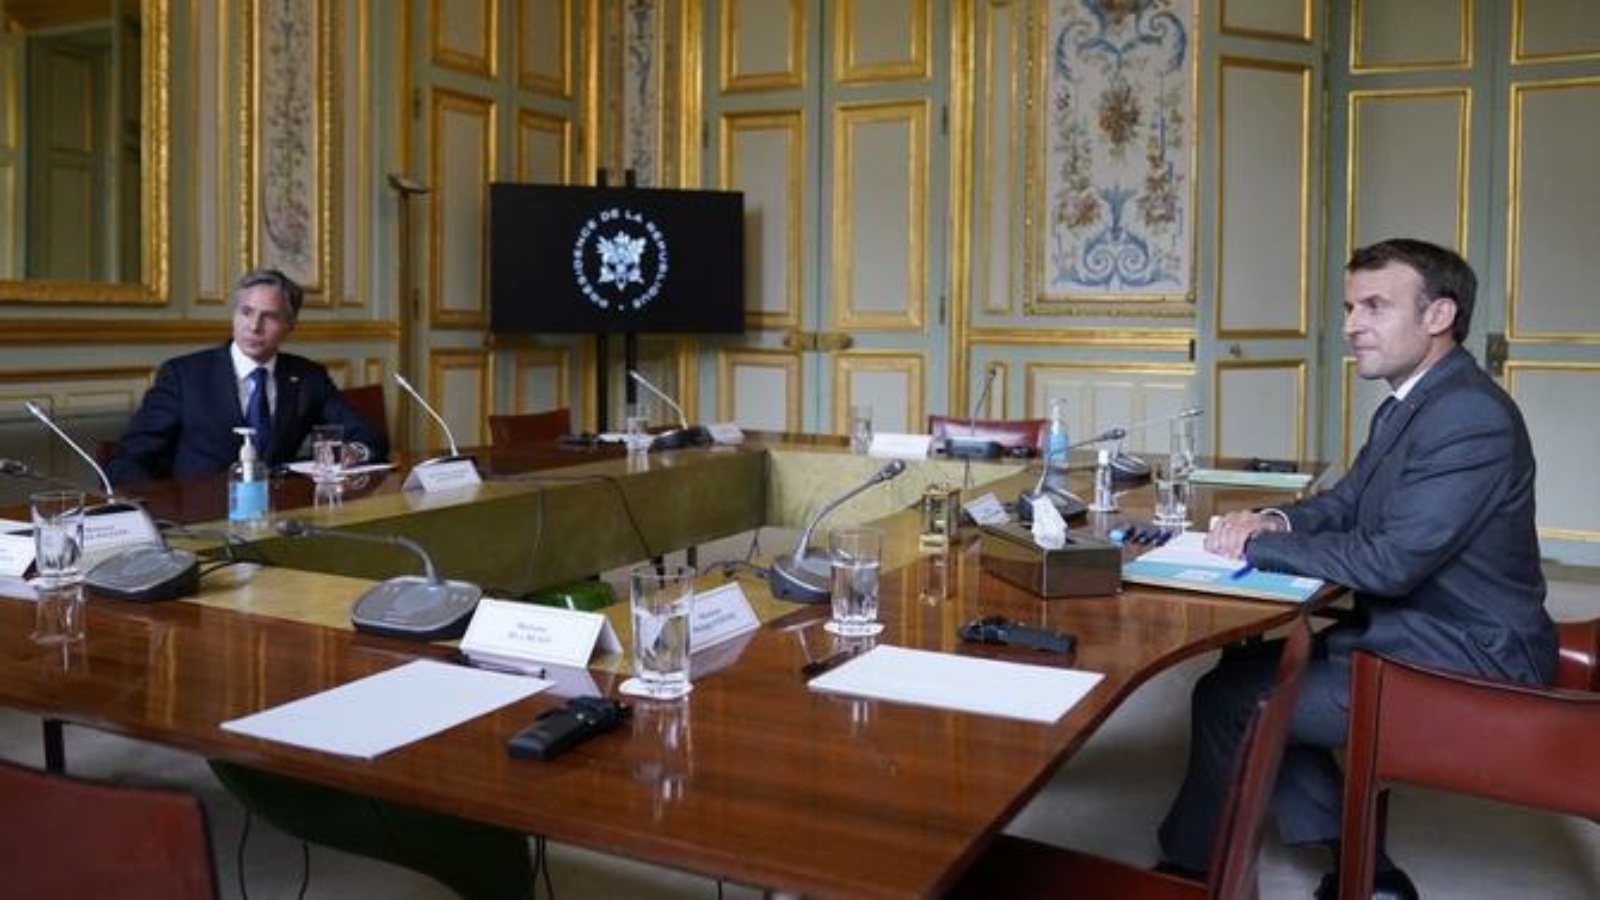 وزير الخارجية الأميركي أنتوني بلينكين يلتقي بالرئيس الفرنسي إيمانويل ماكرون في قصر الإليزيه في باريس في 25 يونيو 2021.